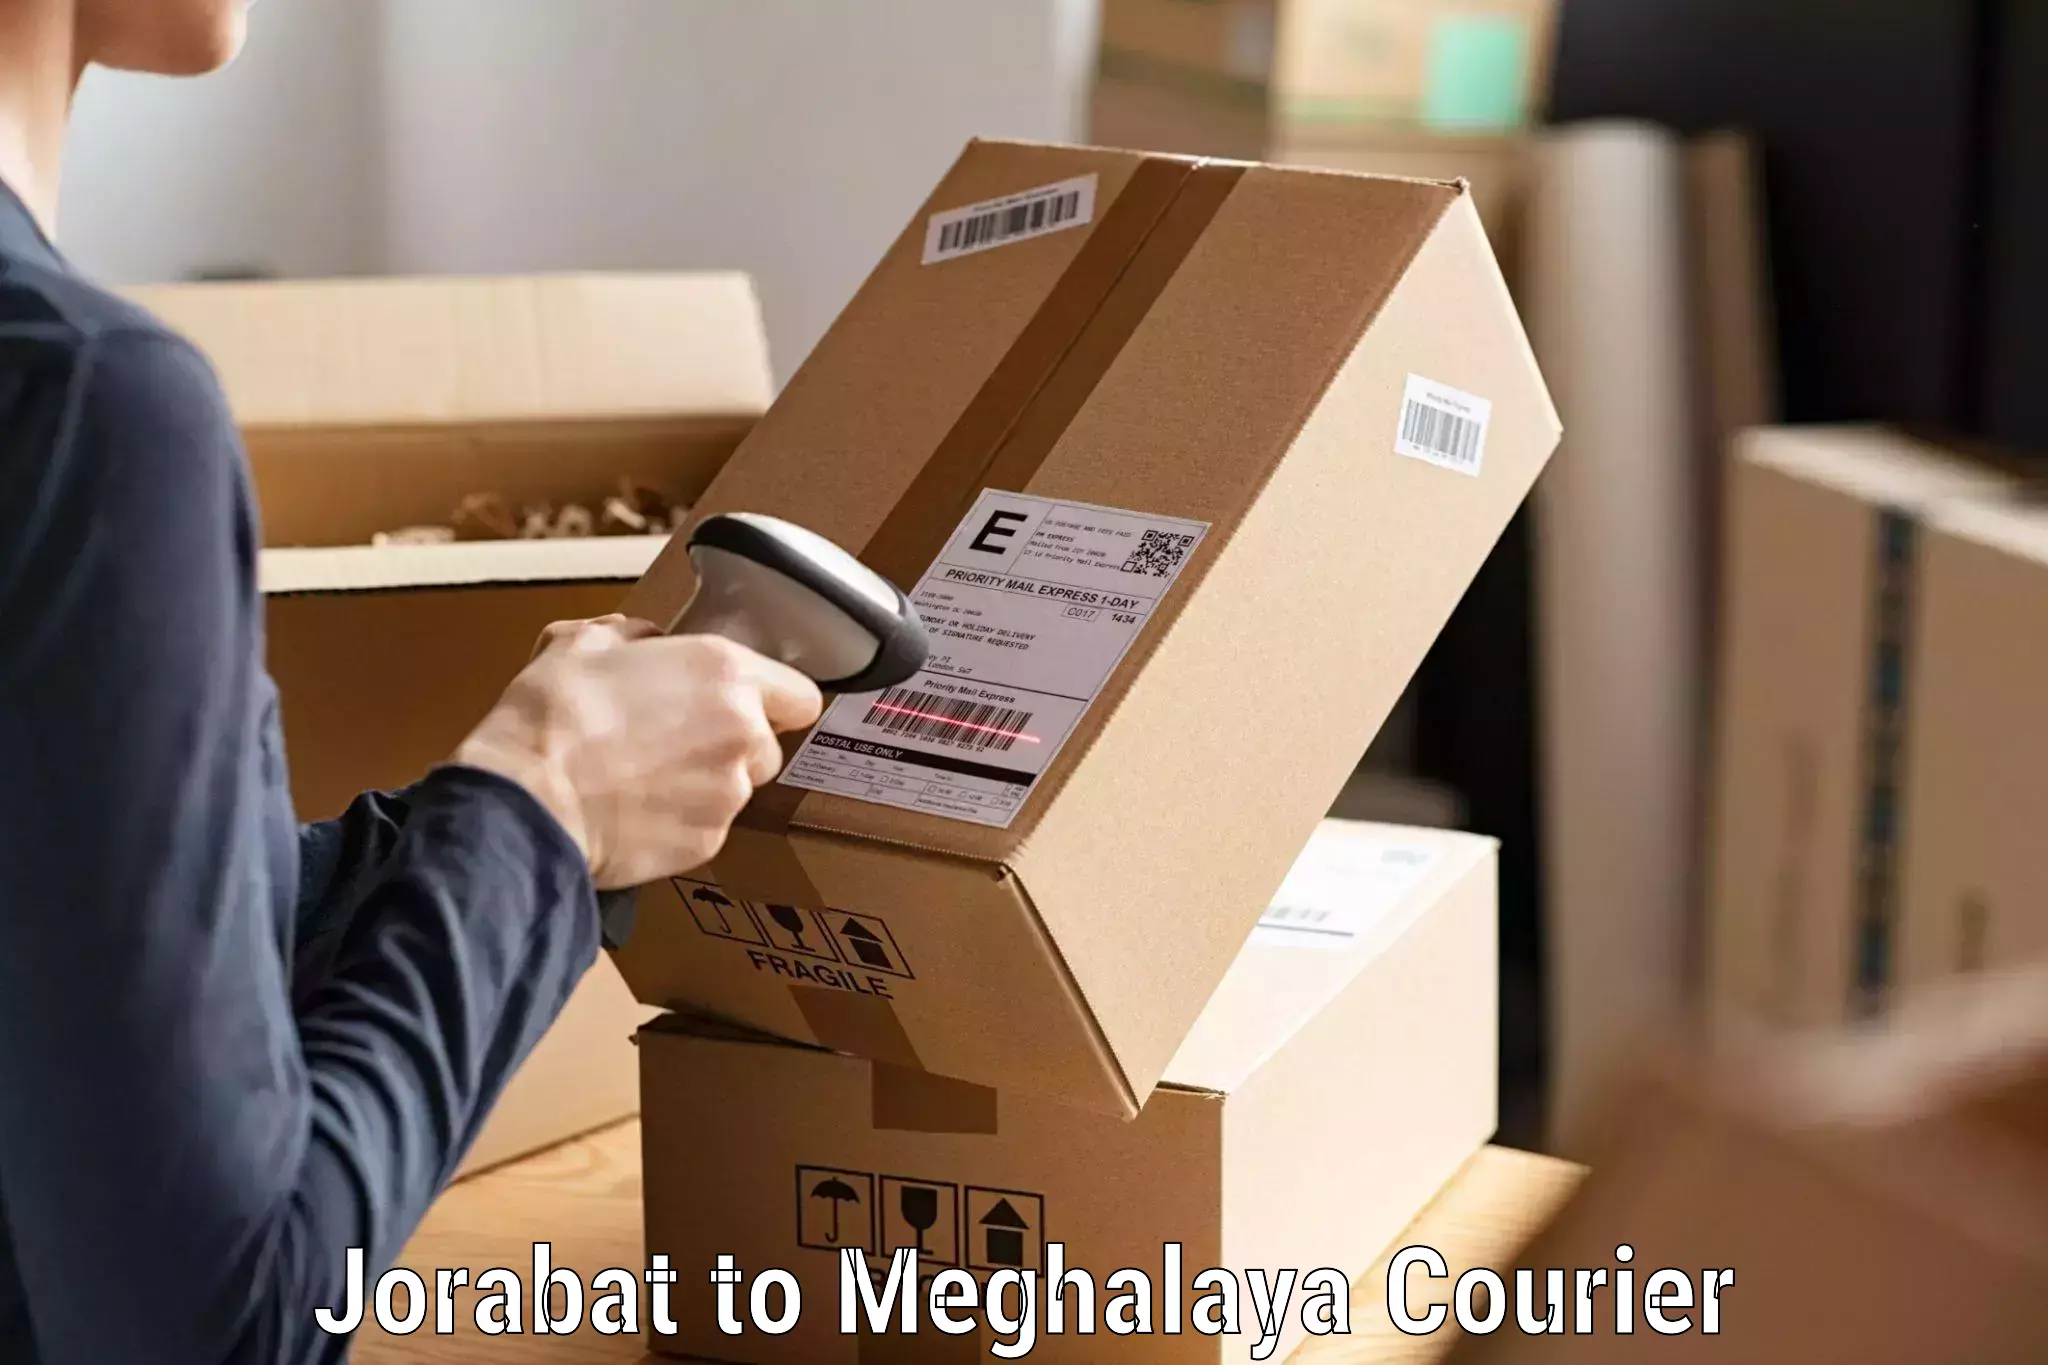 Global shipping networks Jorabat to Meghalaya